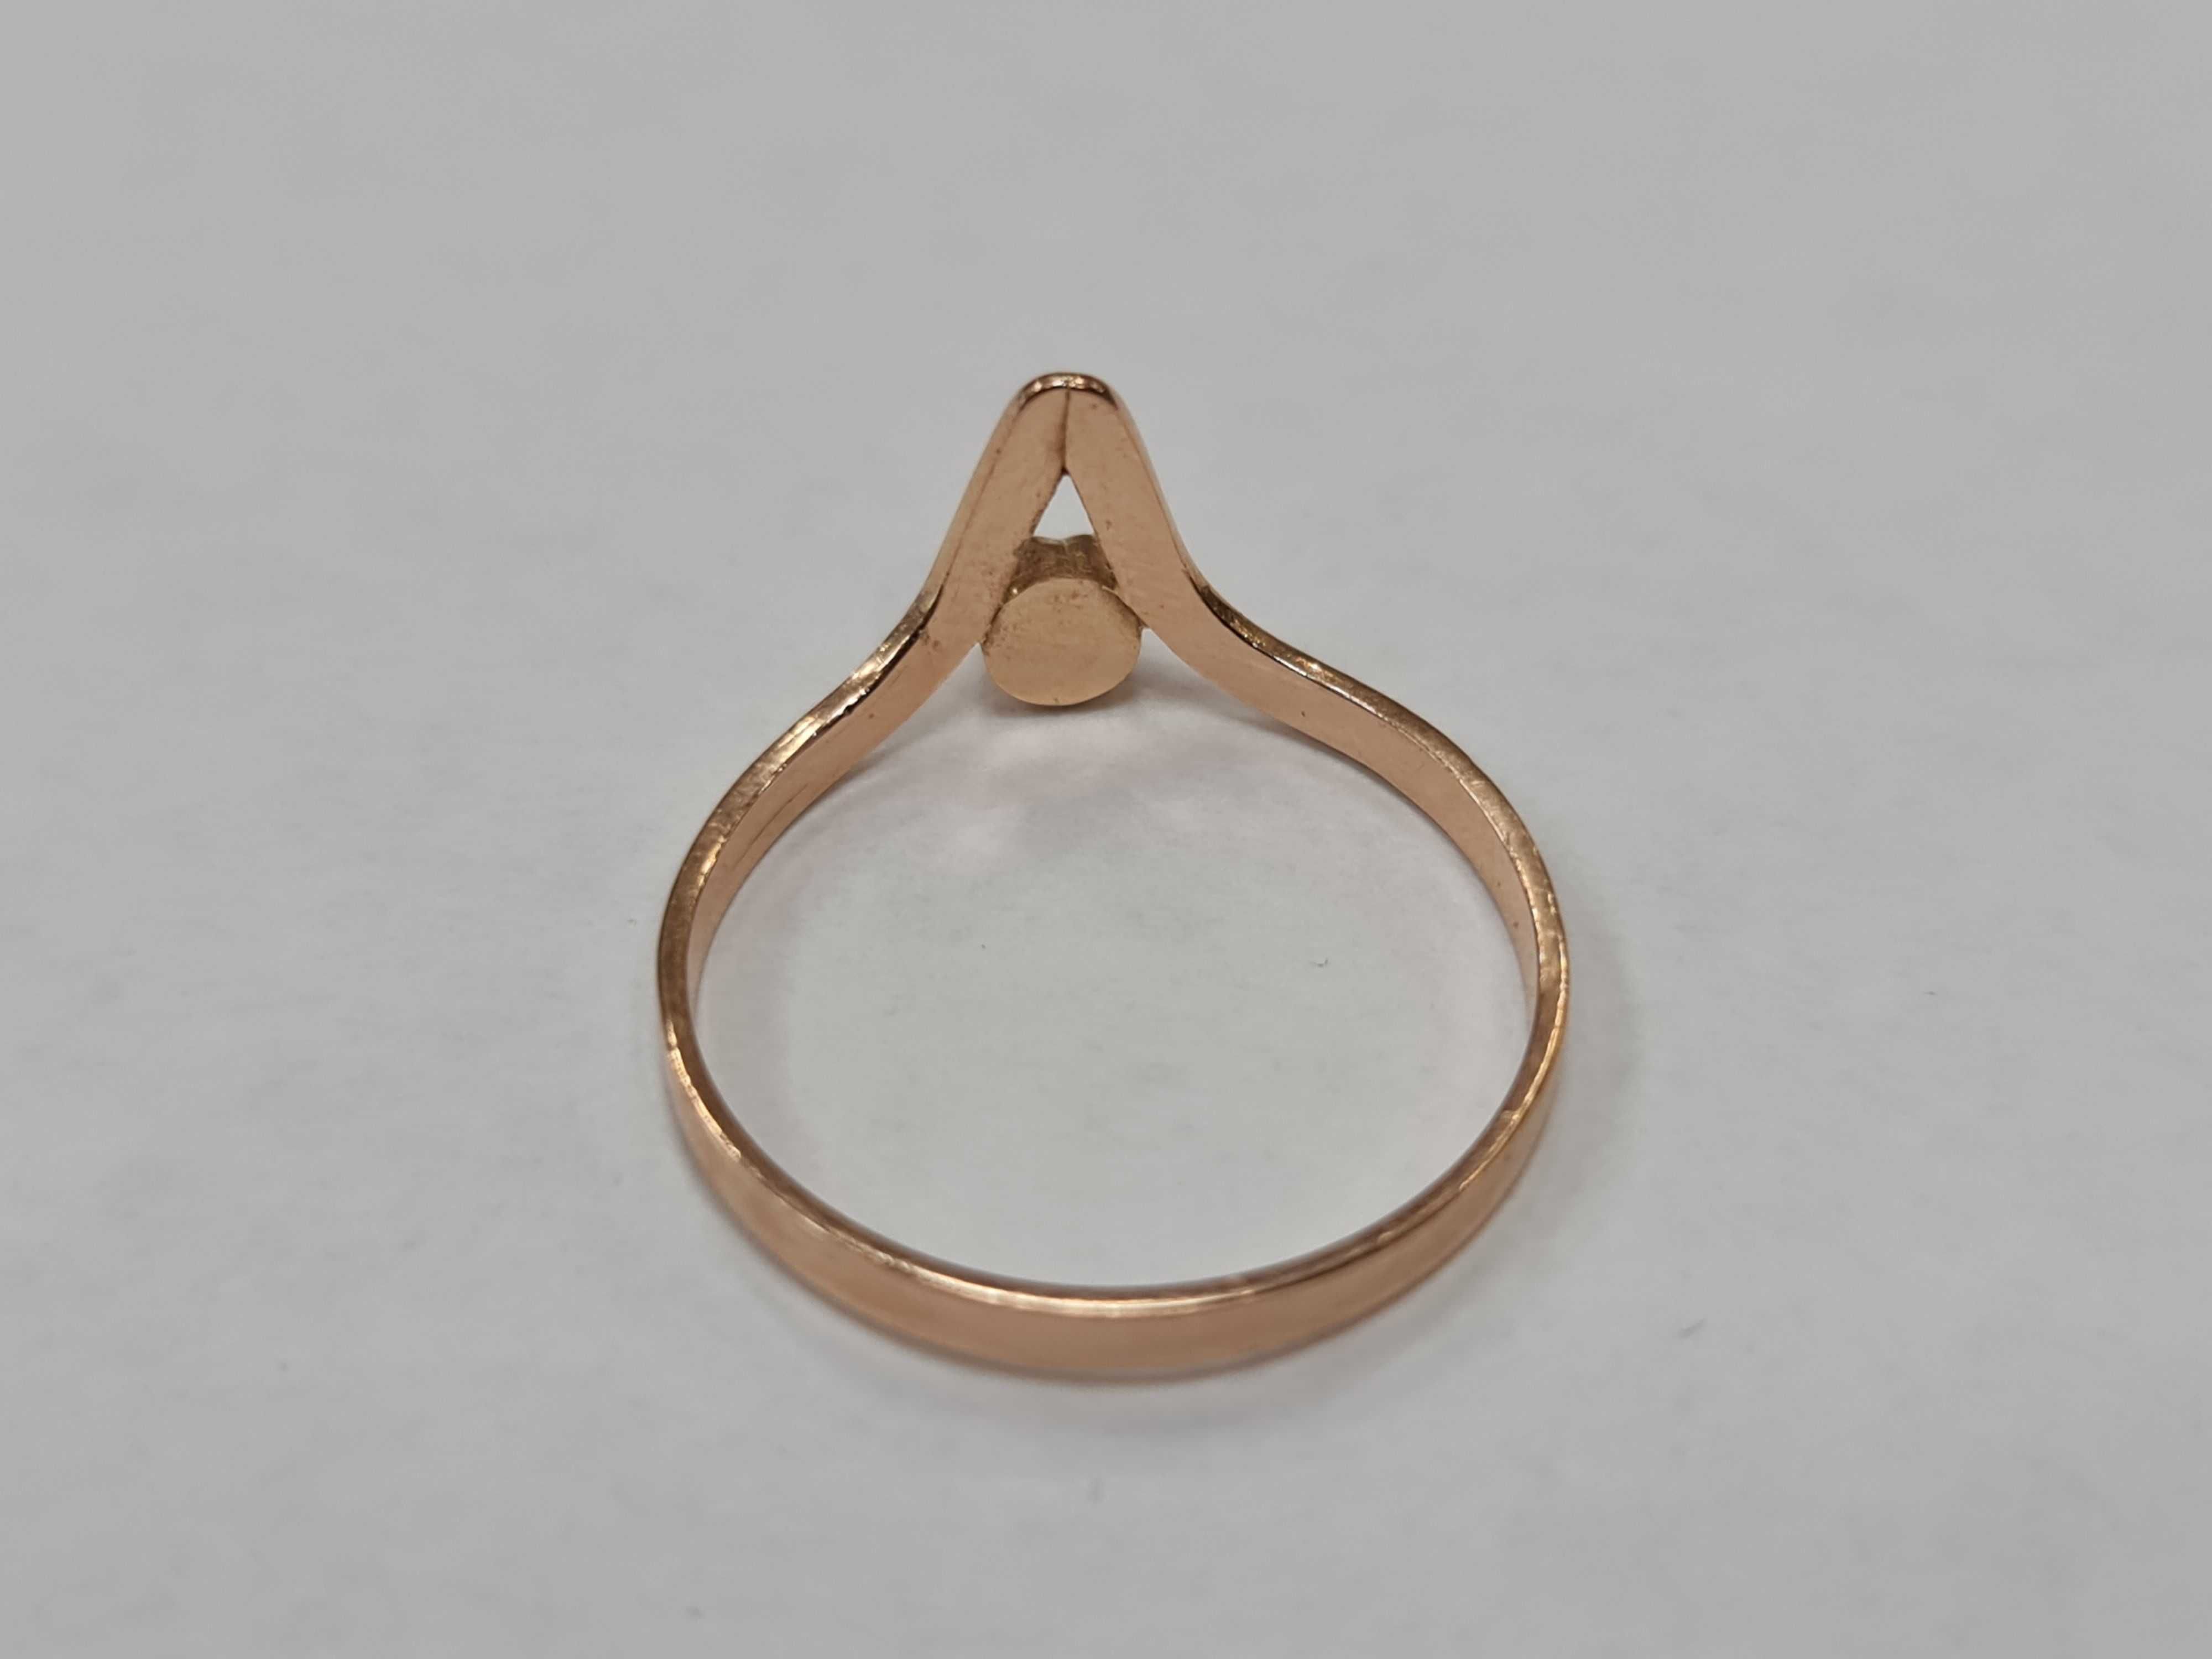 Złoty pierścionek/ 585/ 1.40 gram/ R17/ Zielony agat